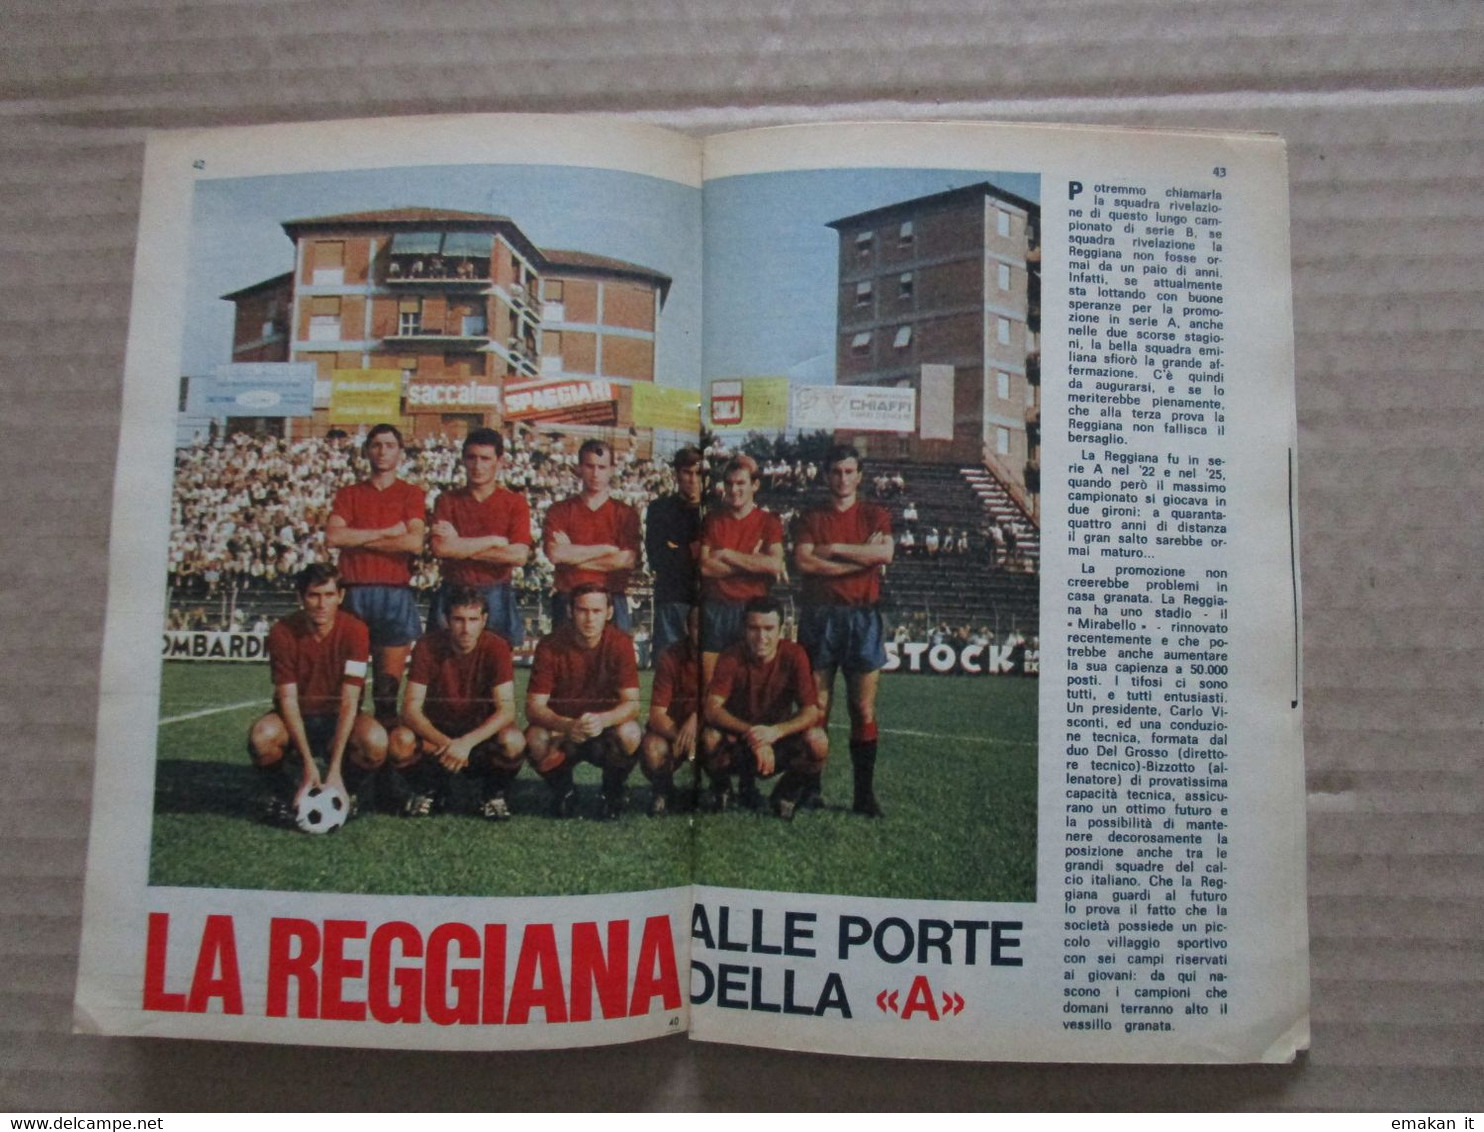 # IL MONELLO N 21 / 1969 ARTICOLO REGGIANA ALLE PORTE DELLA A - First Editions